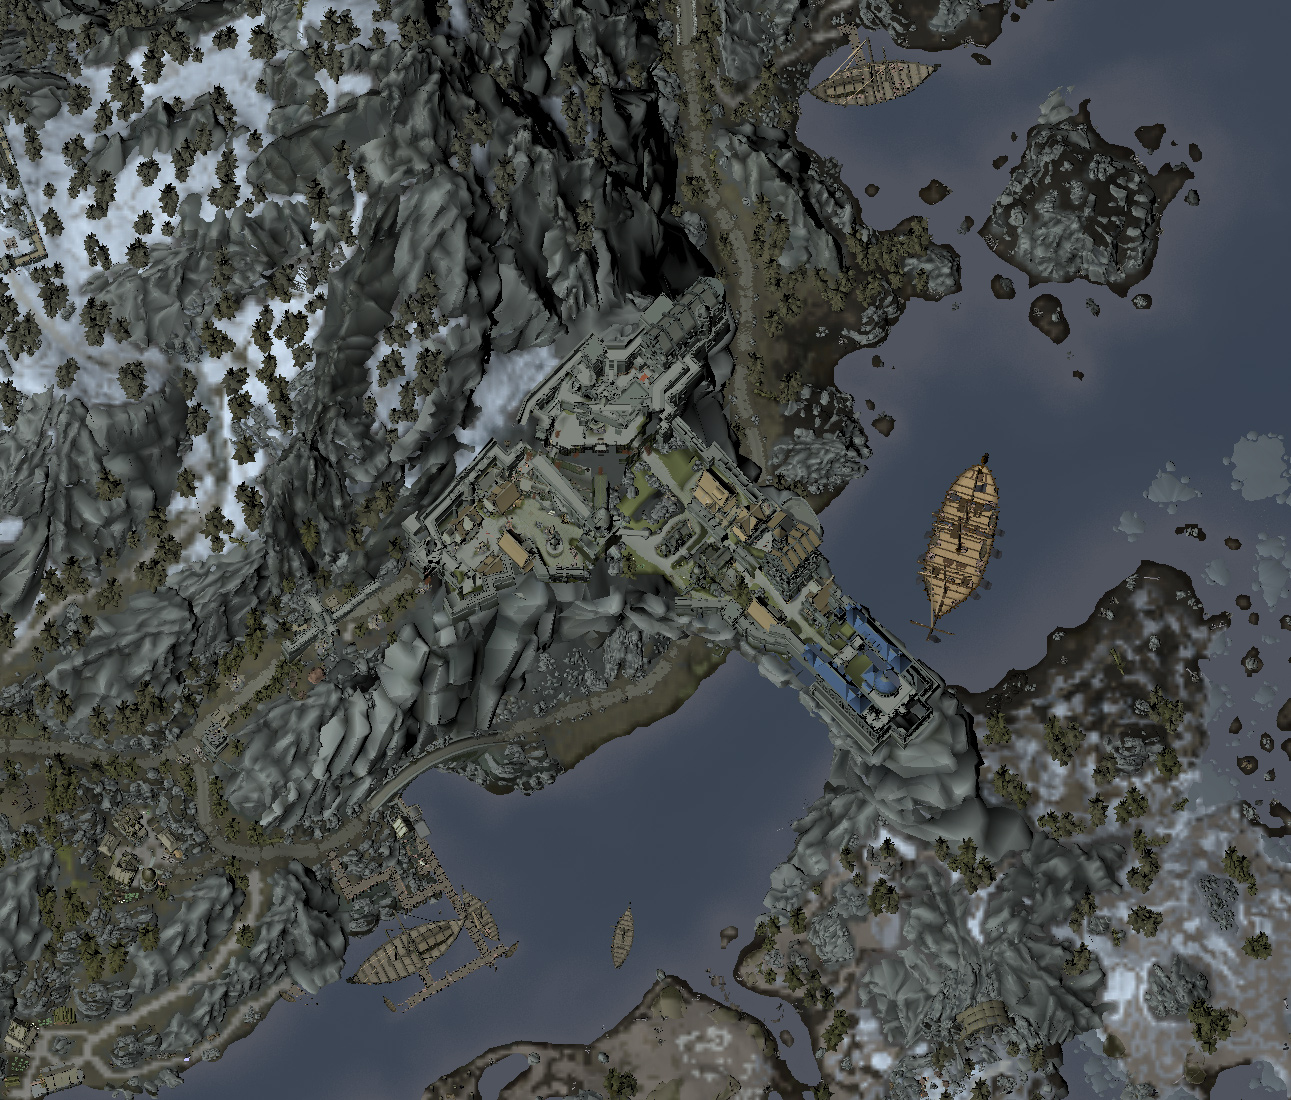 skyrim map in full 3d download